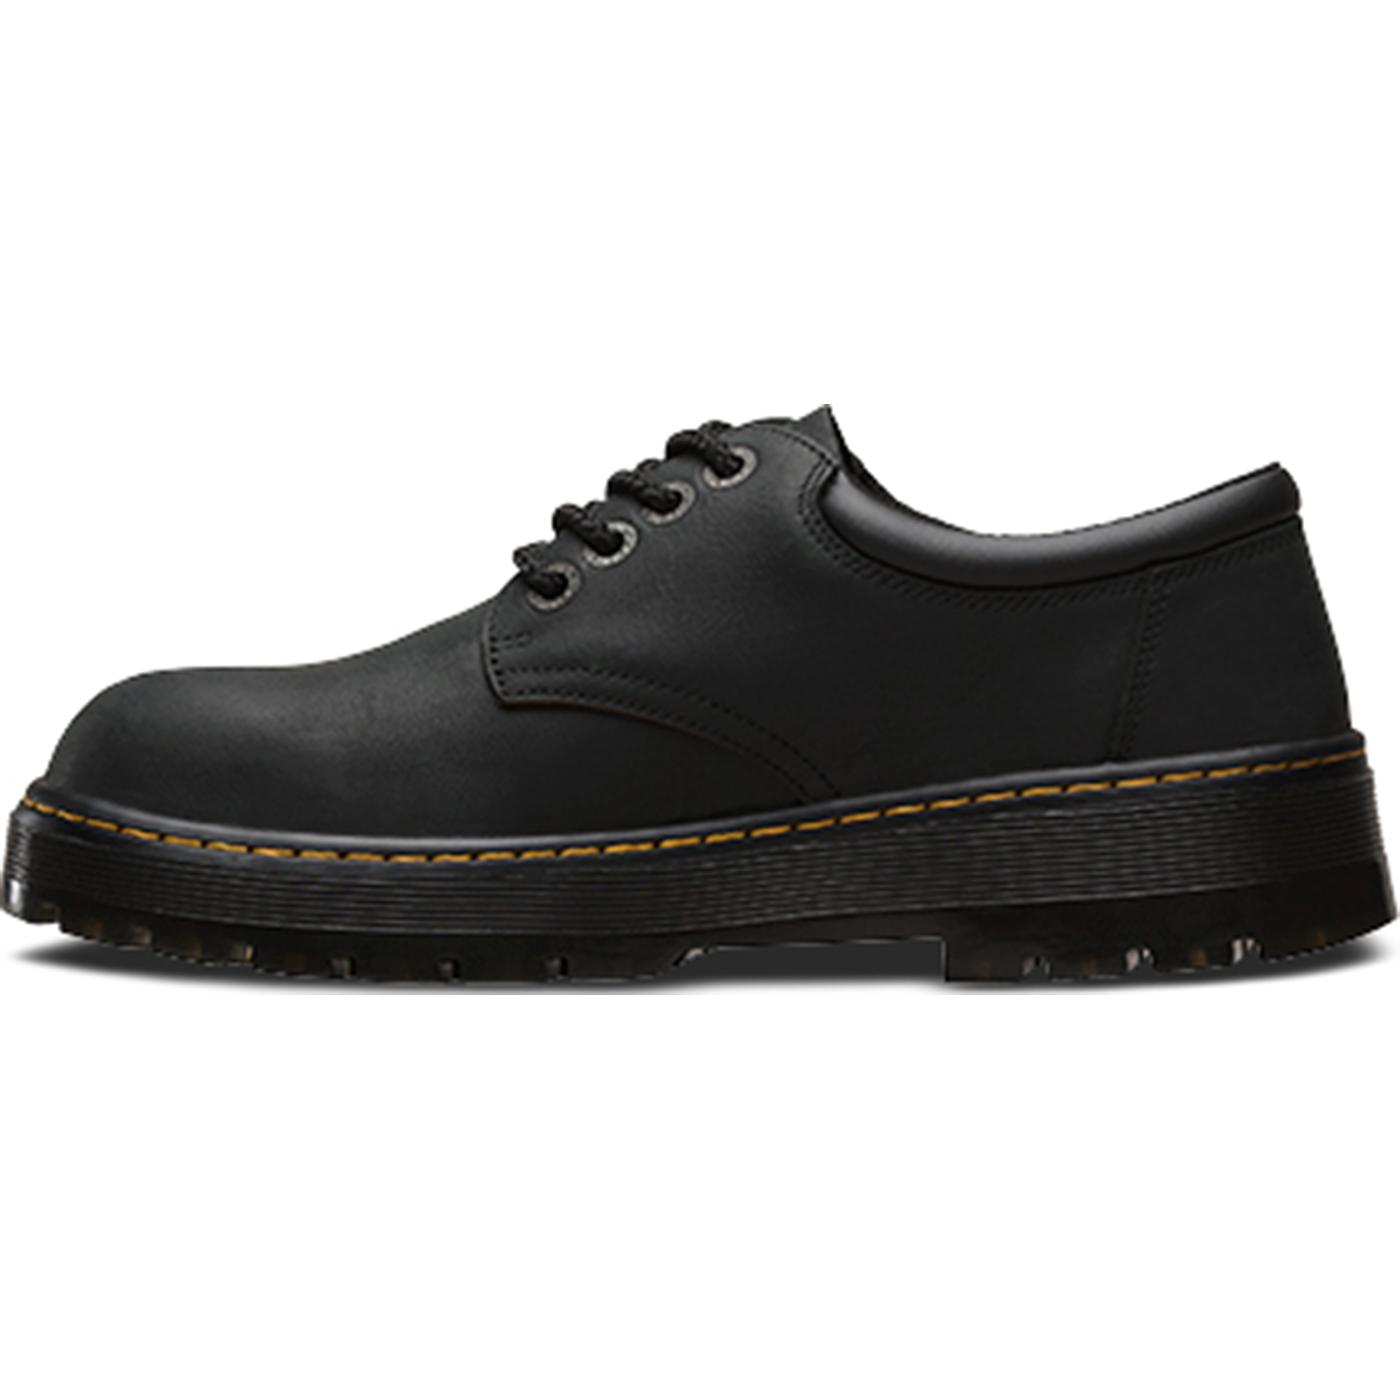 Men's Steel Toe Black Work Oxford Shoe, Dr. Martens Bolt